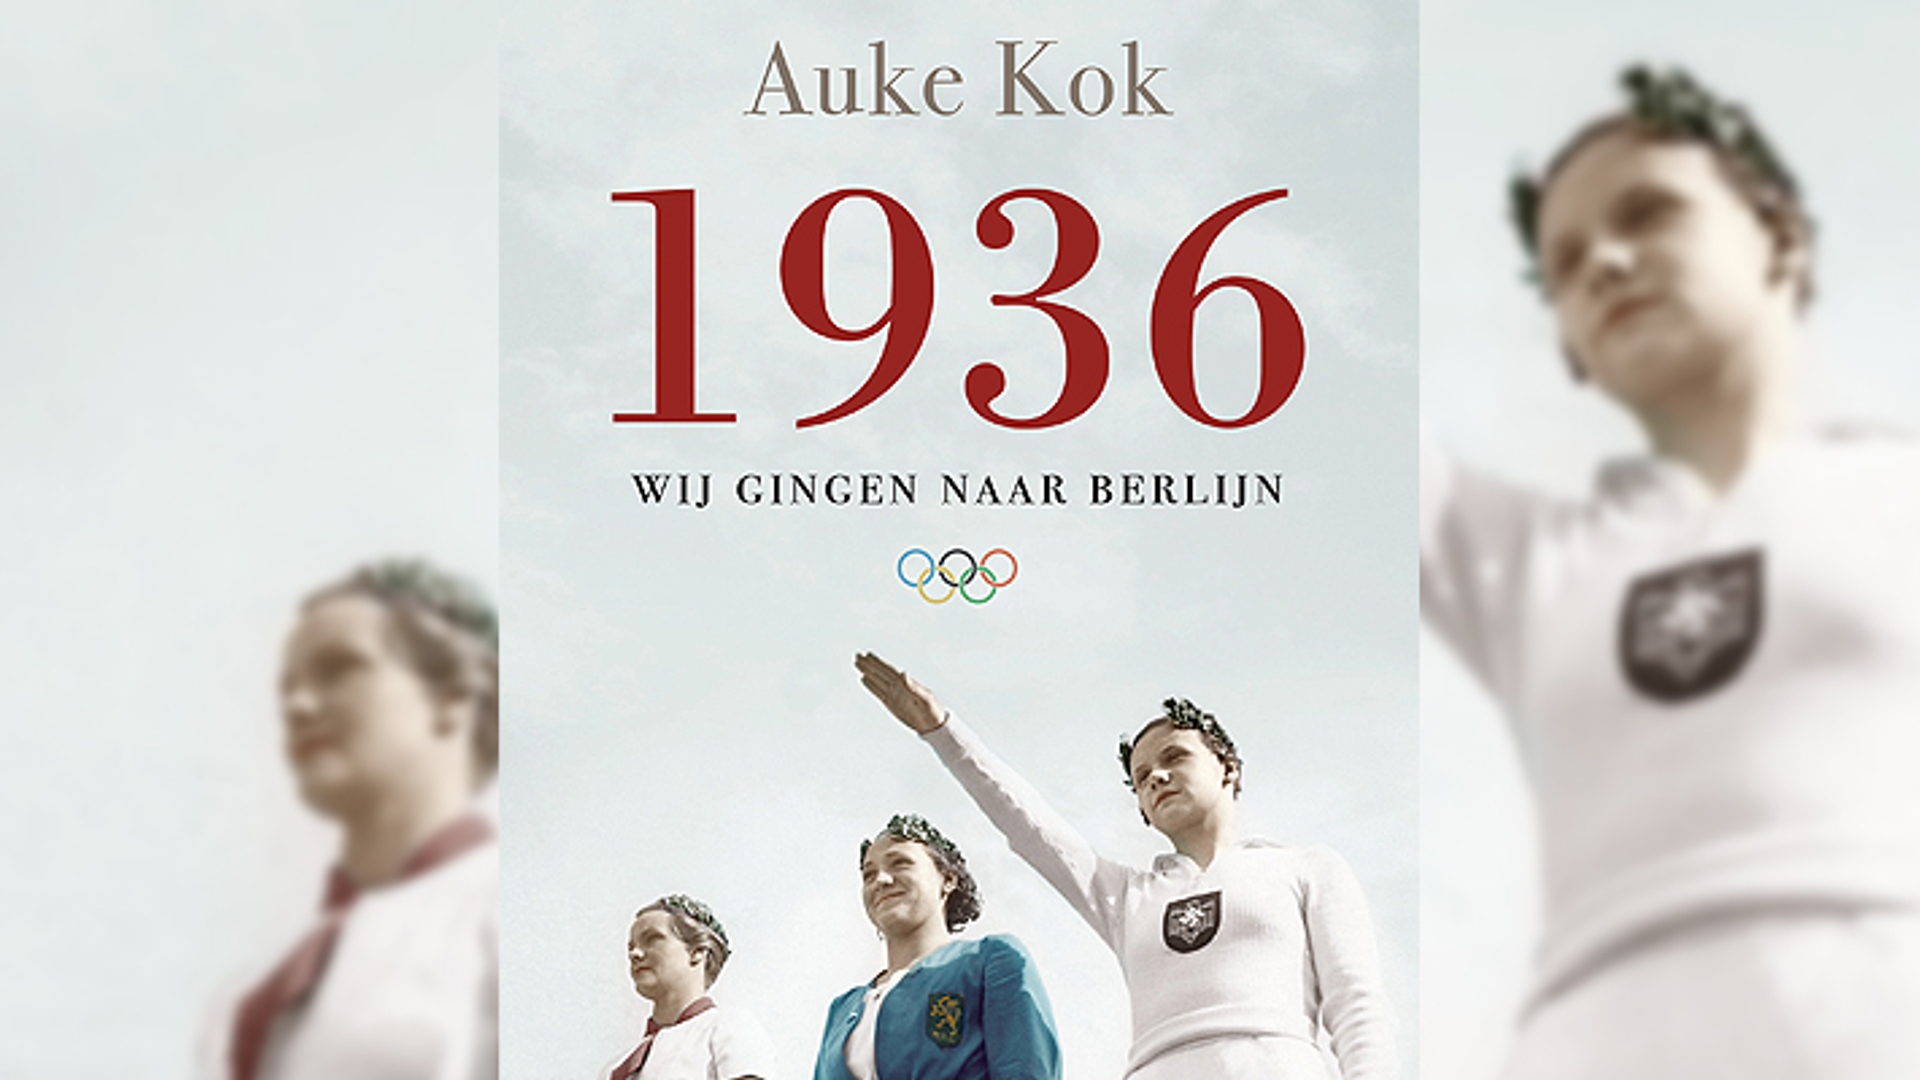 Boek 1936 Auke Kok